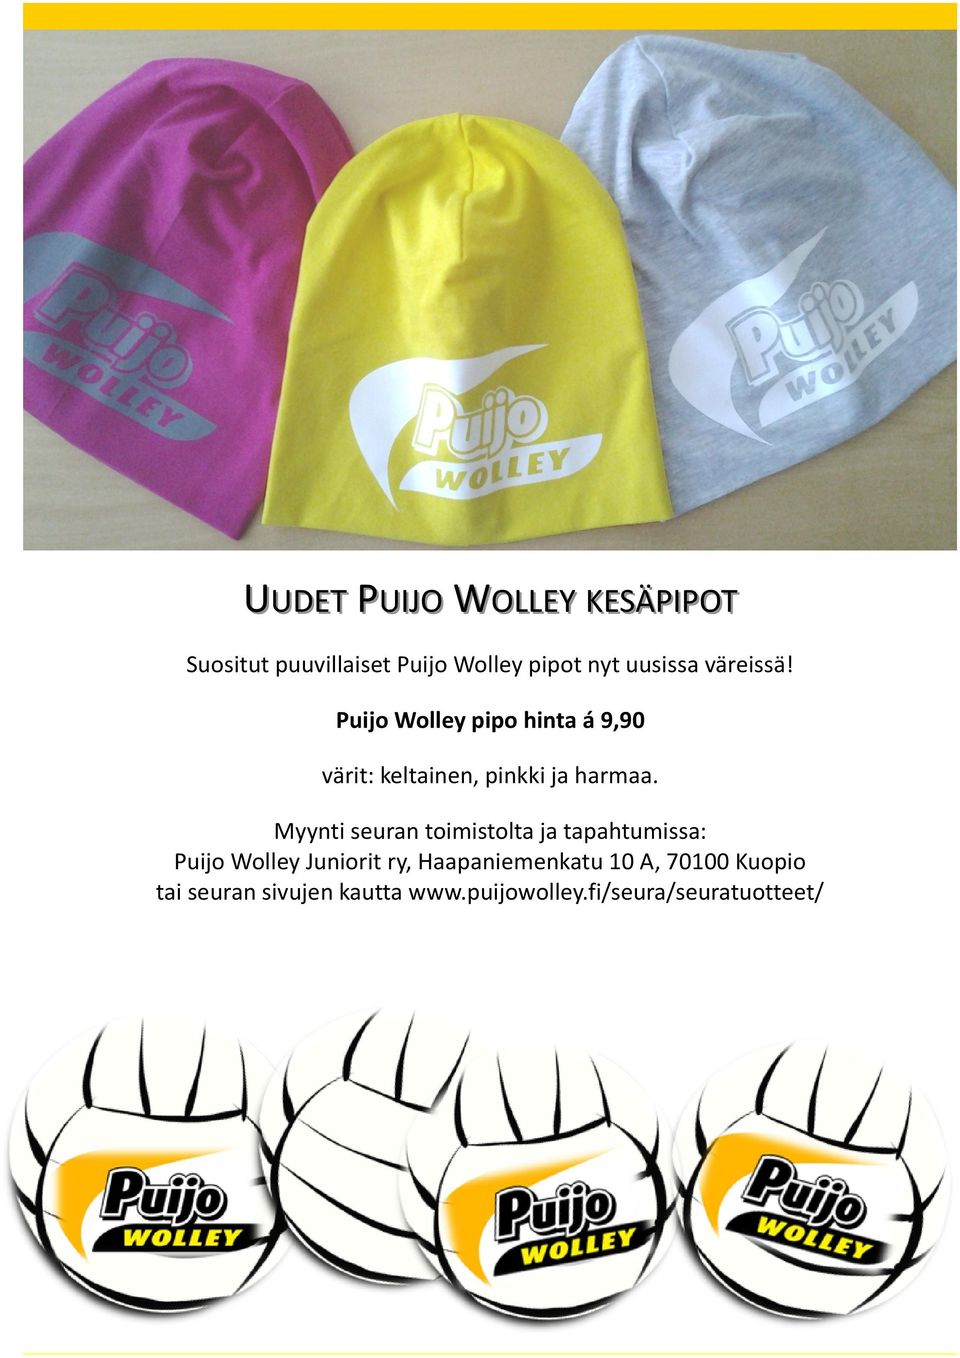 Puijo Wolley pipo hinta á 9,90 värit: keltainen, pinkki ja harmaa.